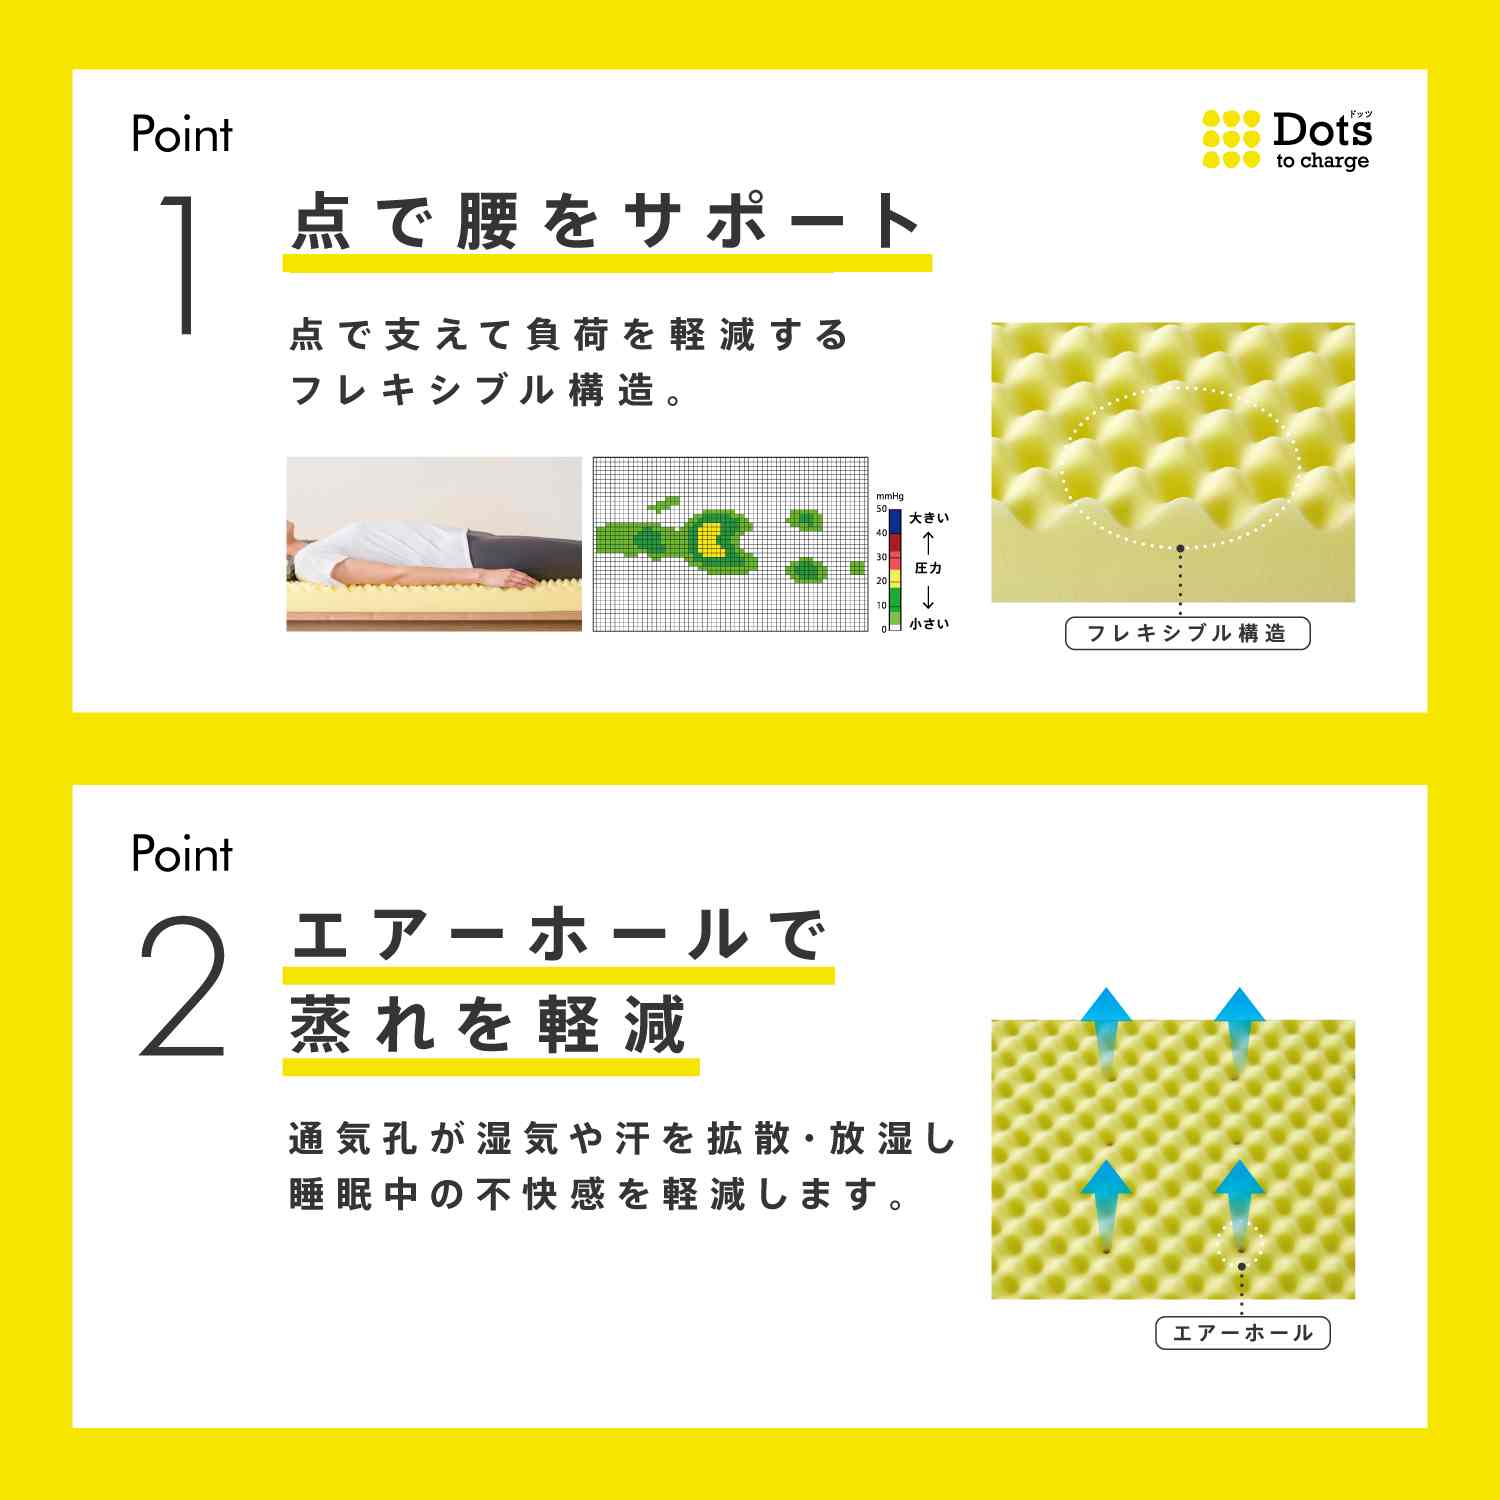 nishikawa 西川 睡眠 Labo Dots ヘルシーマットレス 1層 丸巻きタイプ シングルサイズ